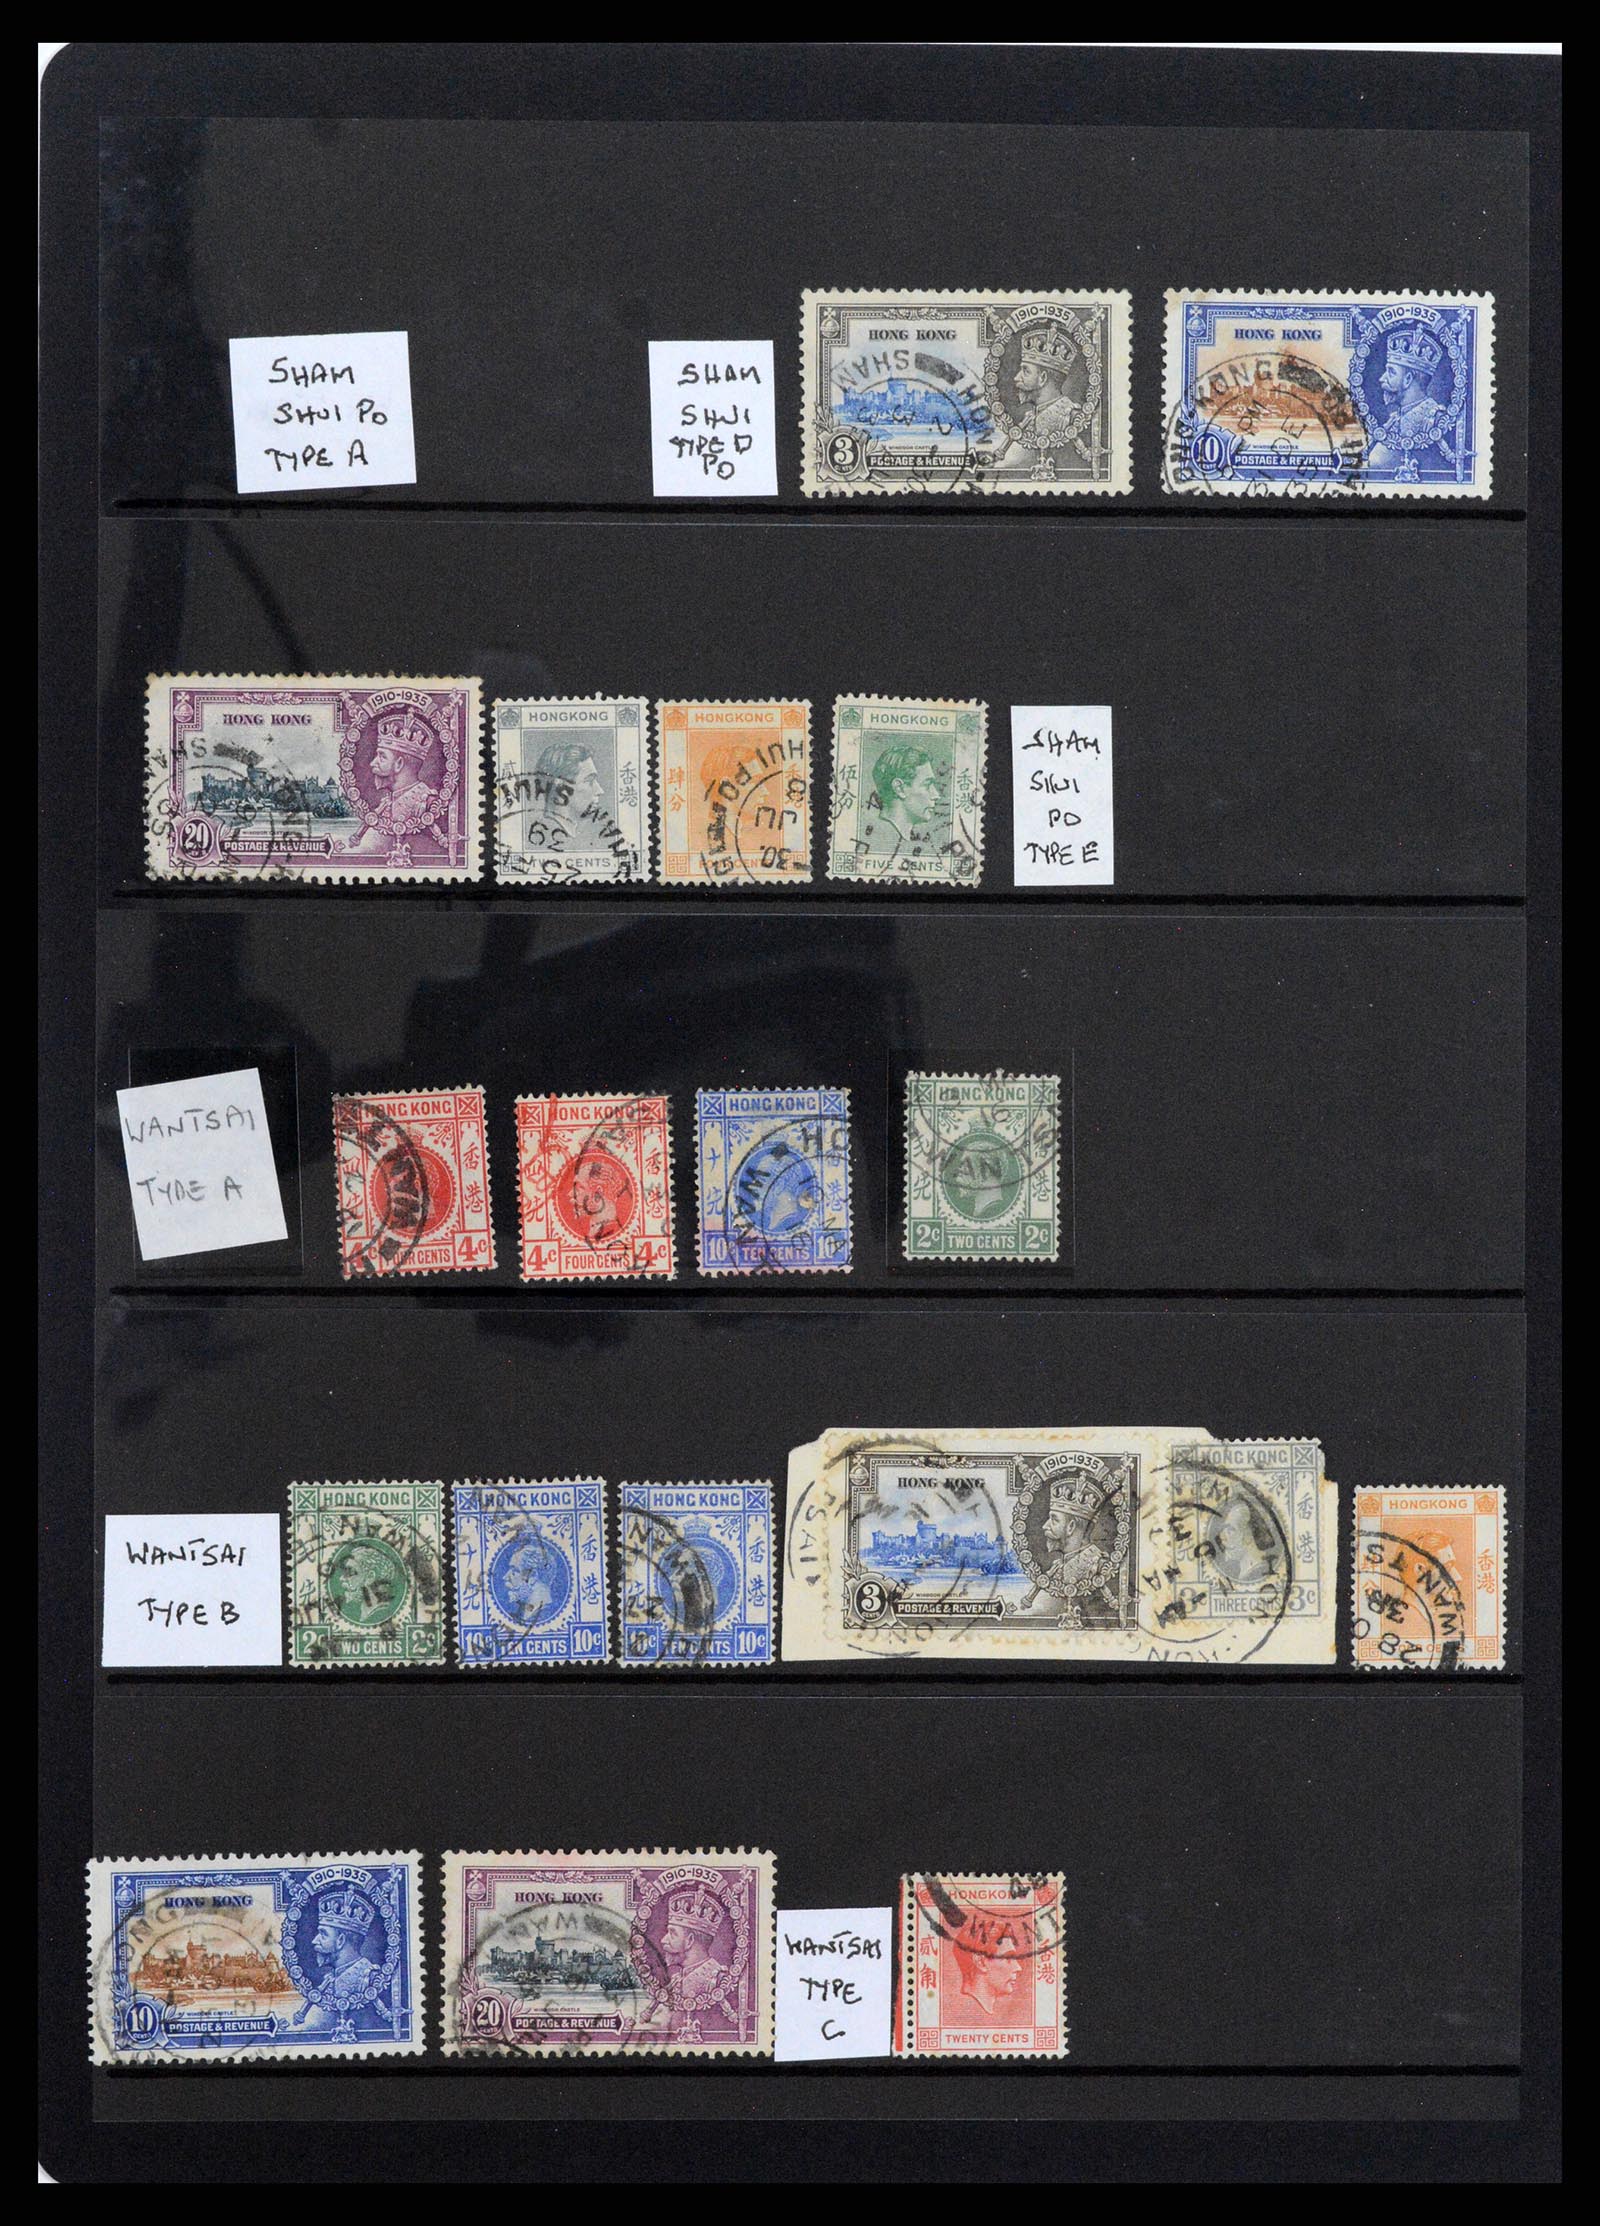 37358 061 - Stamp collection 37358 Hong Kong 1861-1997.